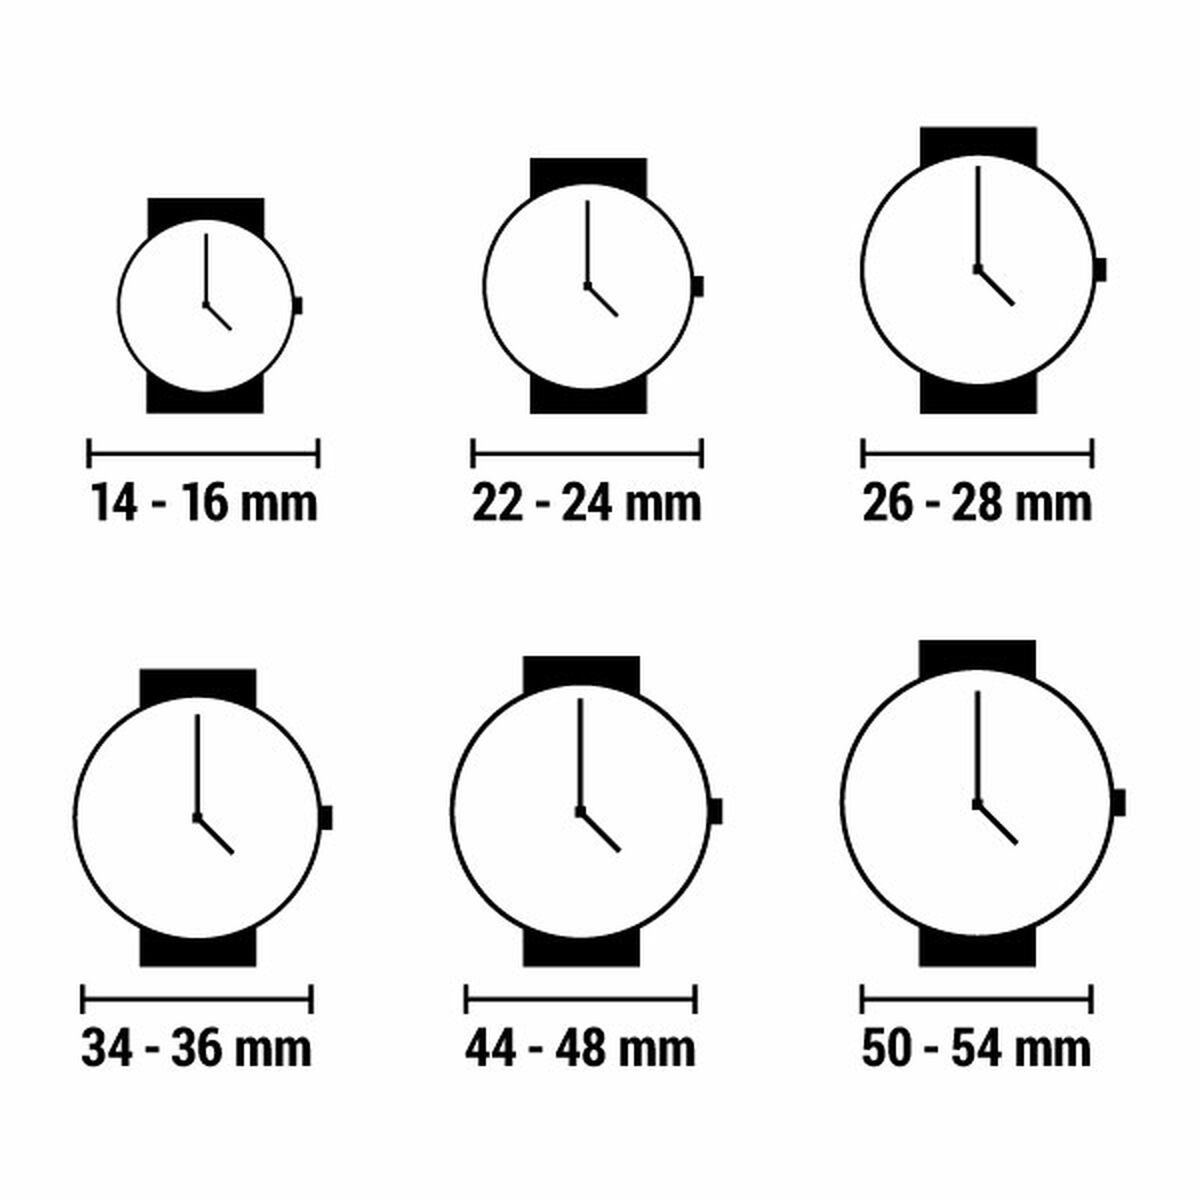 Horloge Dames Esprit ES1L151L0015